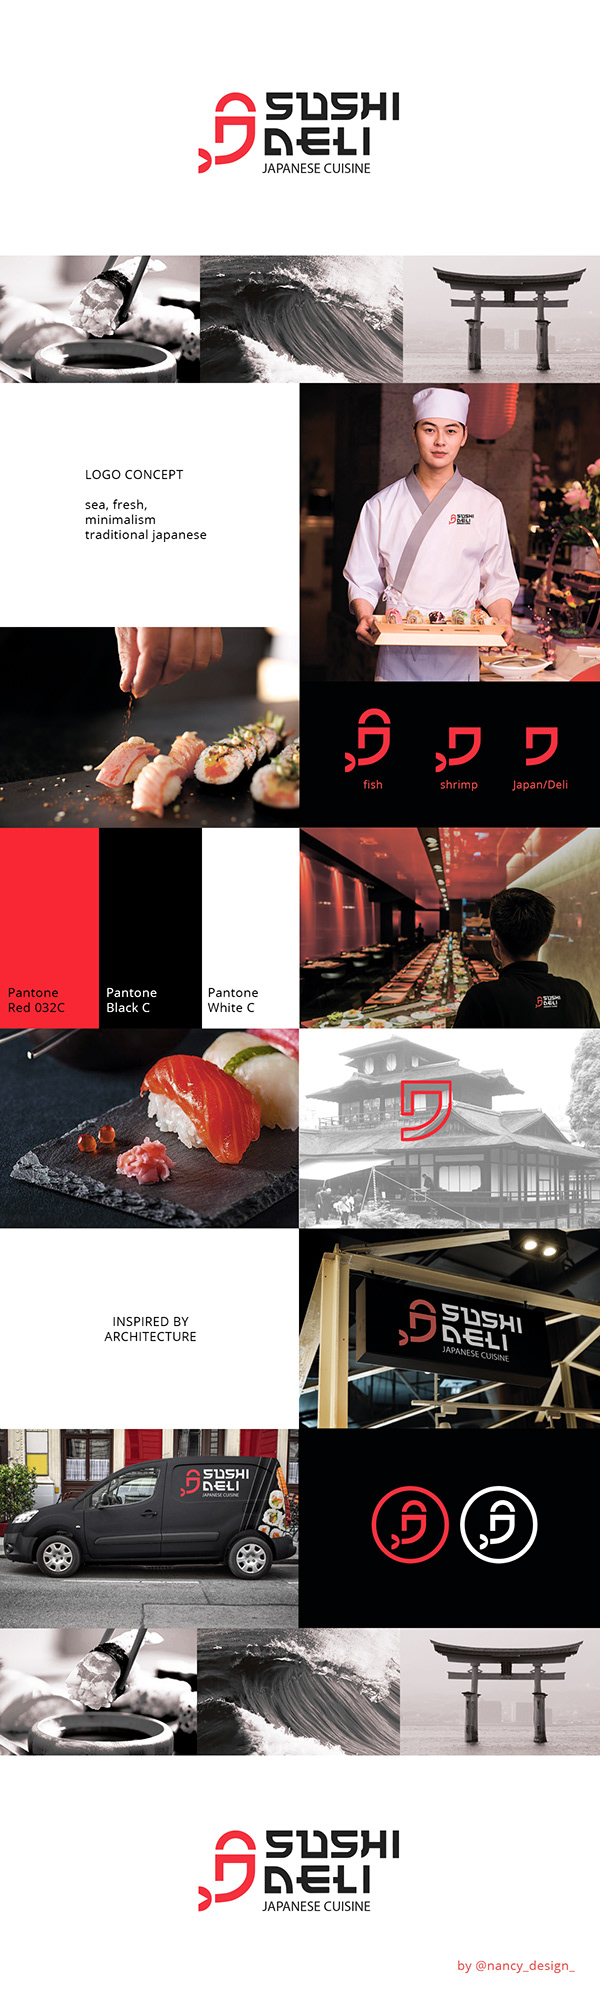 Logo designed for a japanese restaurant